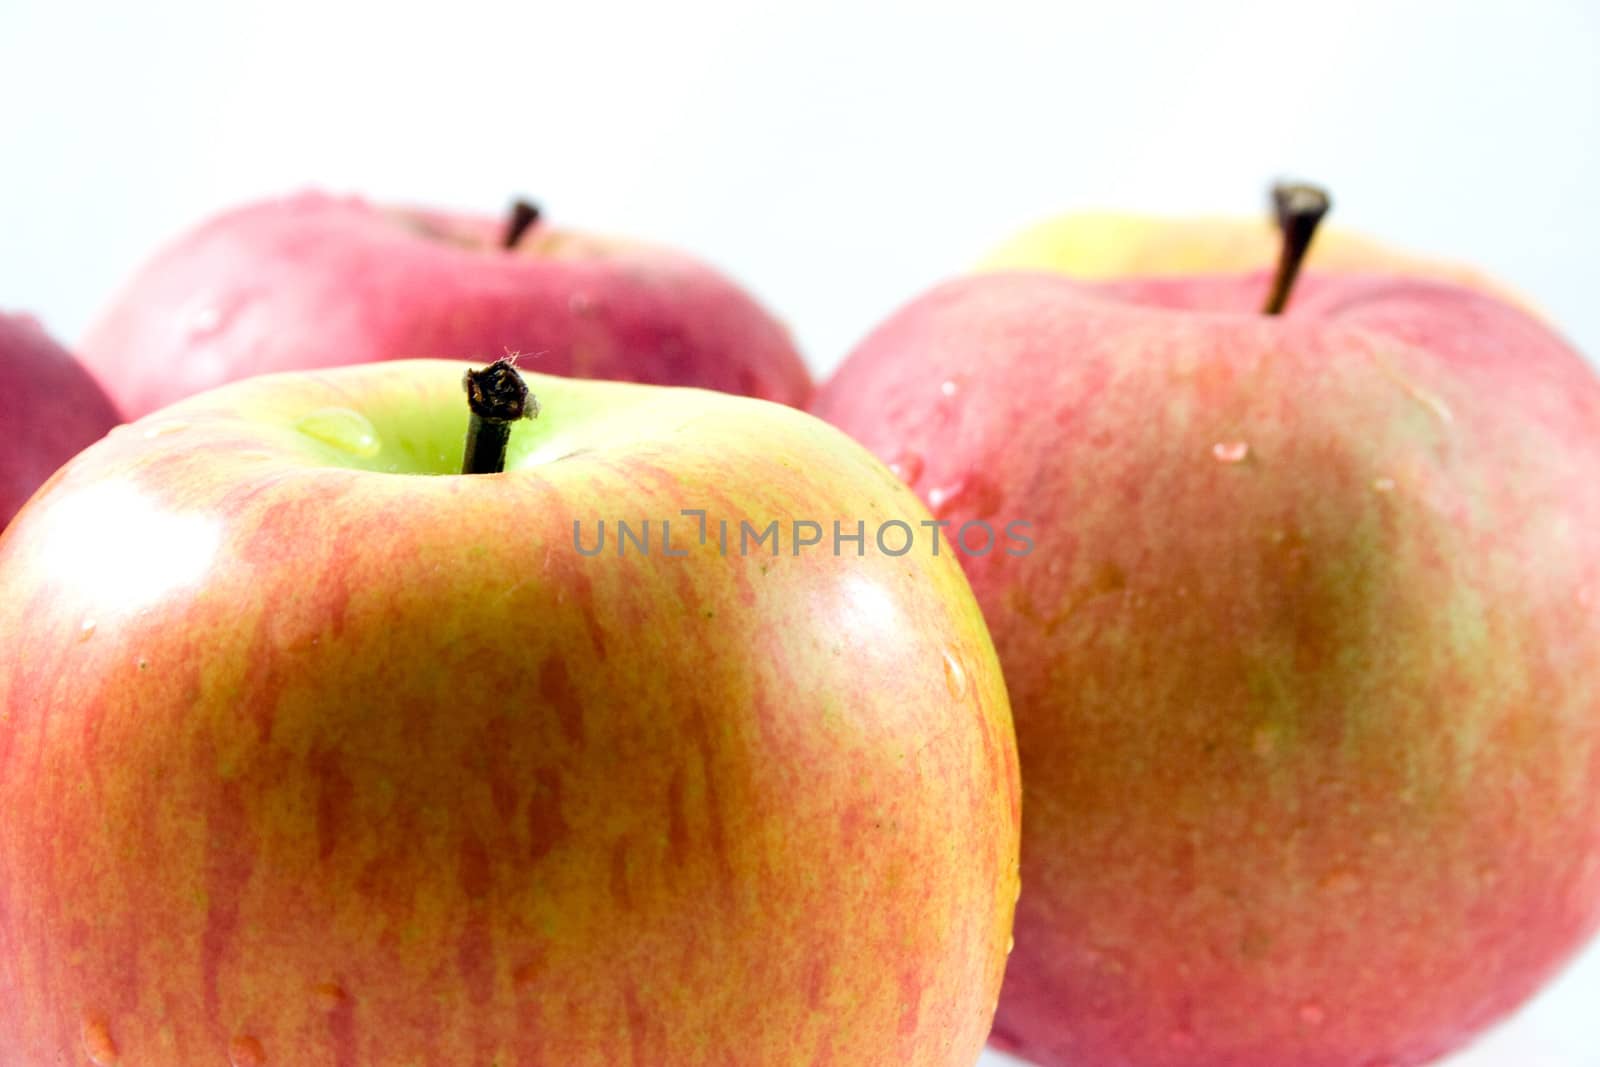 Studio shot of apples